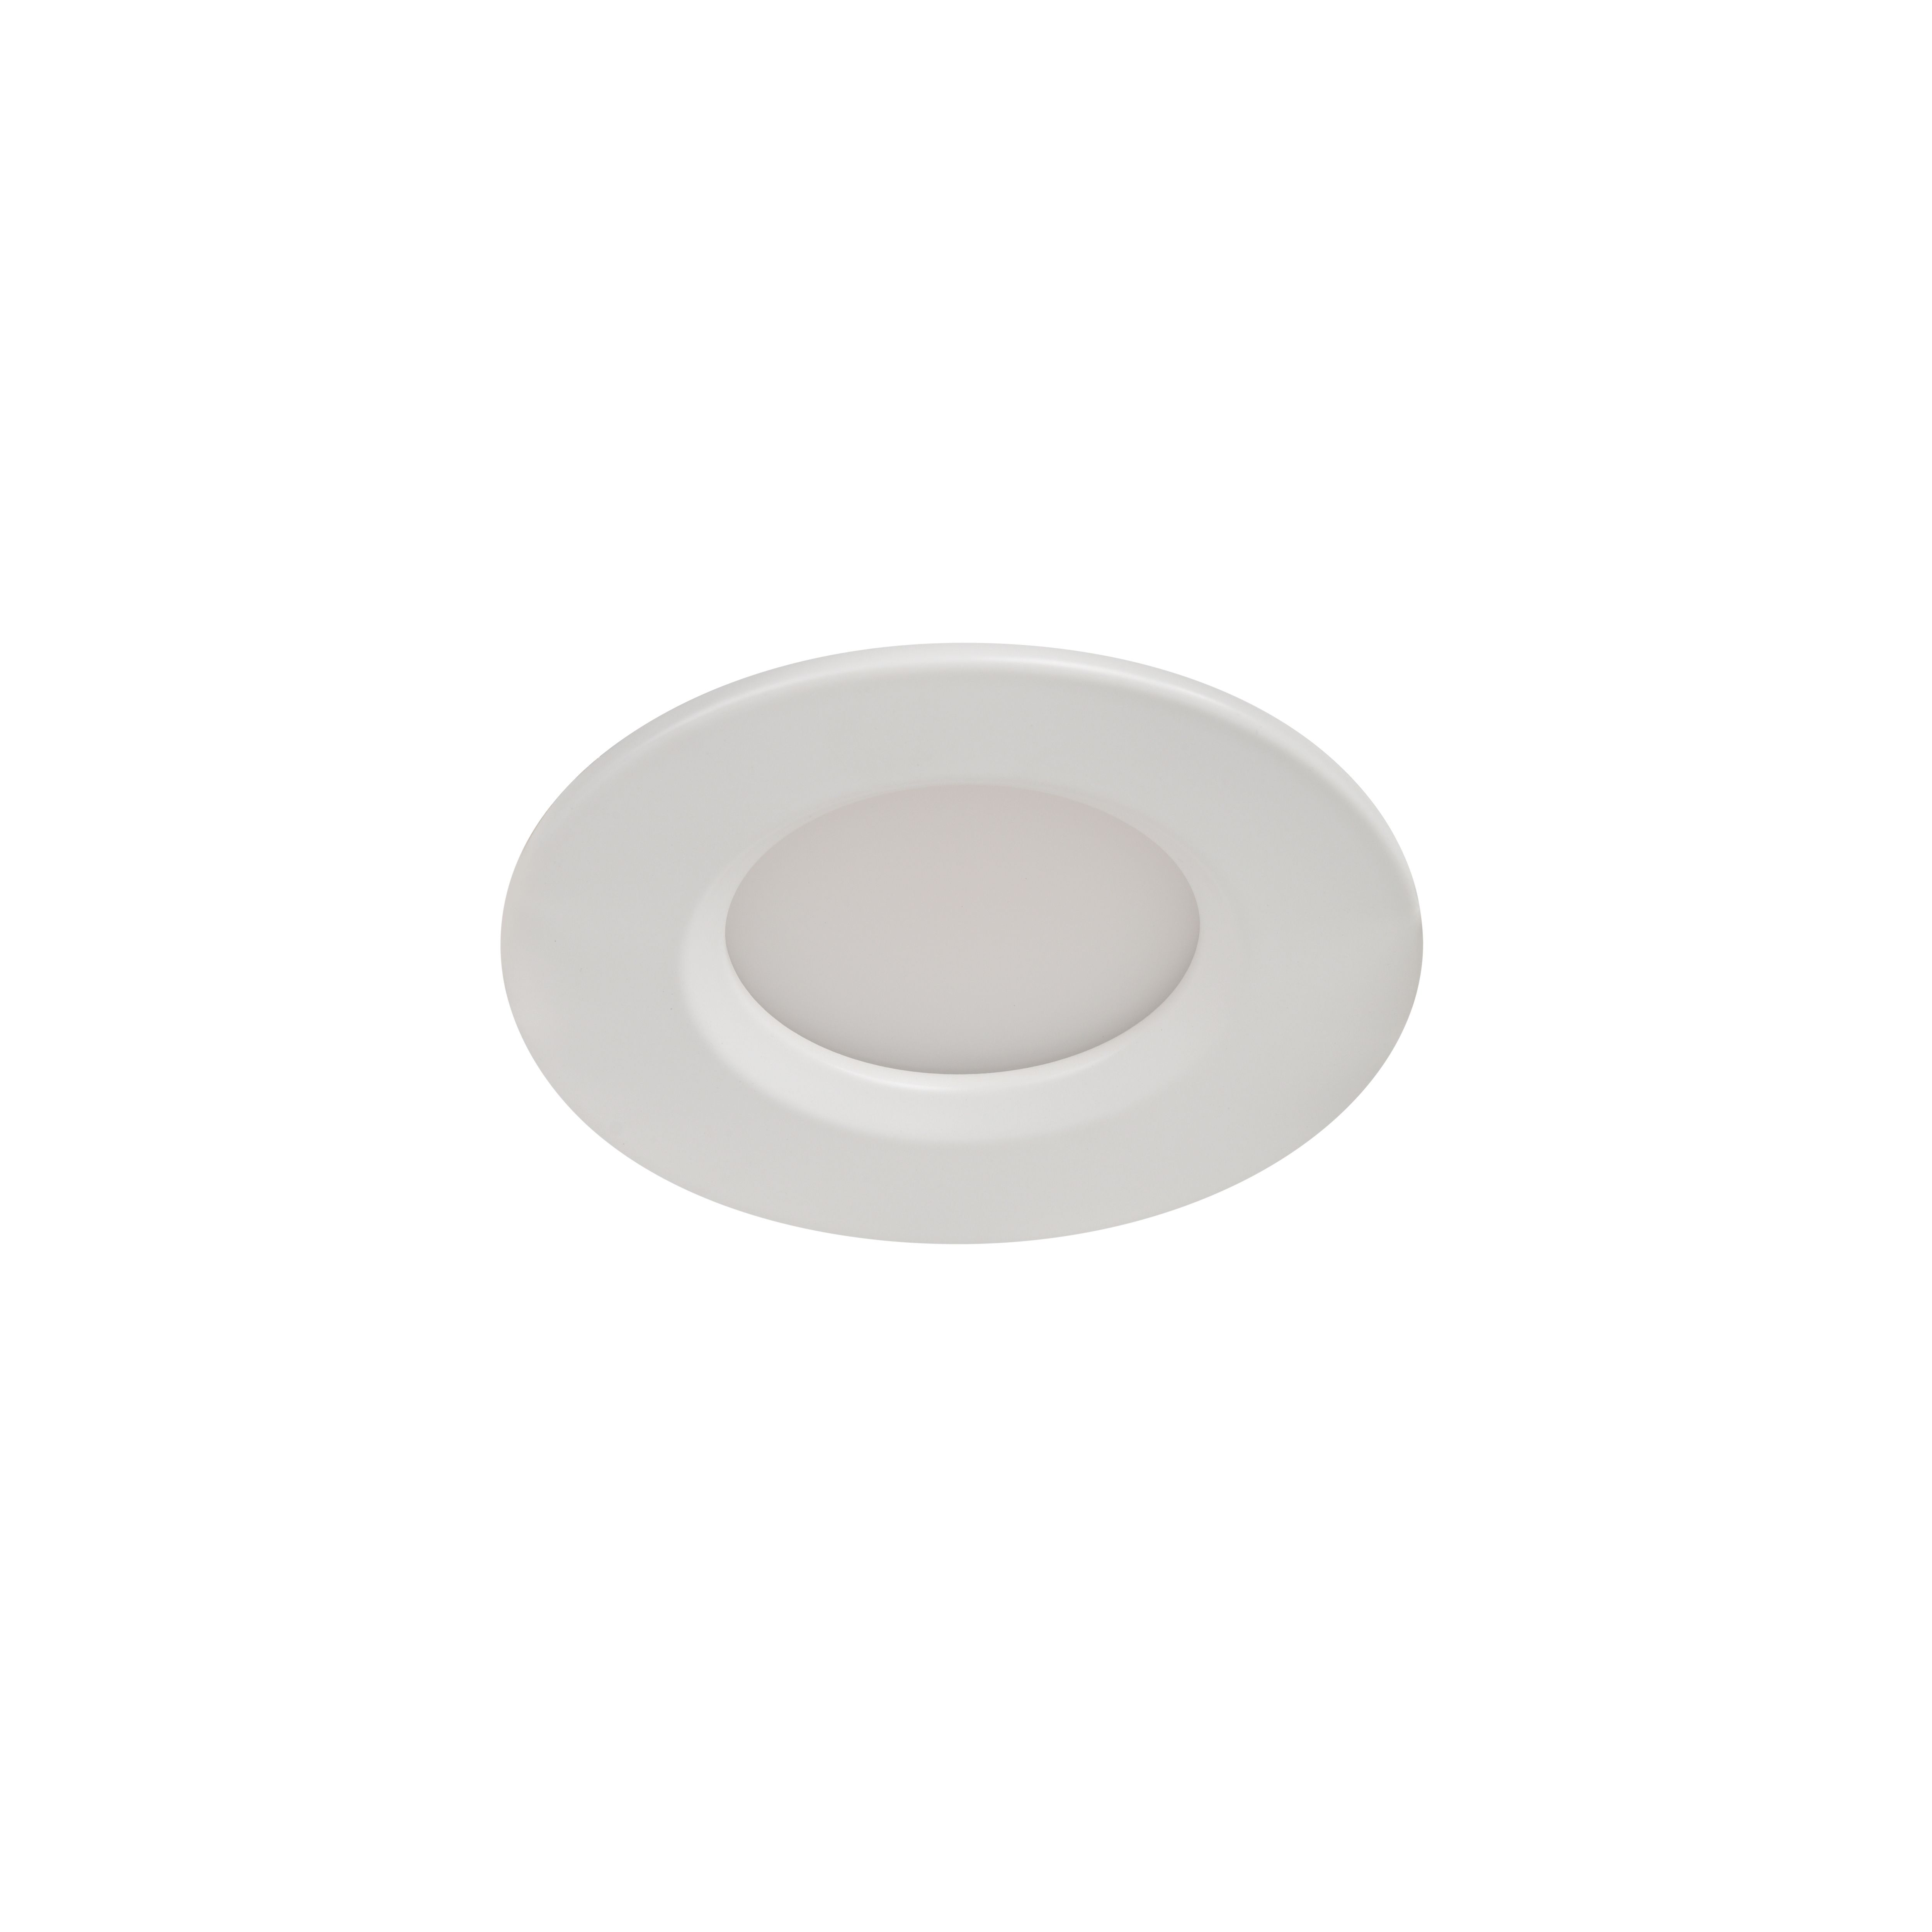 Etana White Non-adjustable LED Neutral white Downlight 4.7W IP65